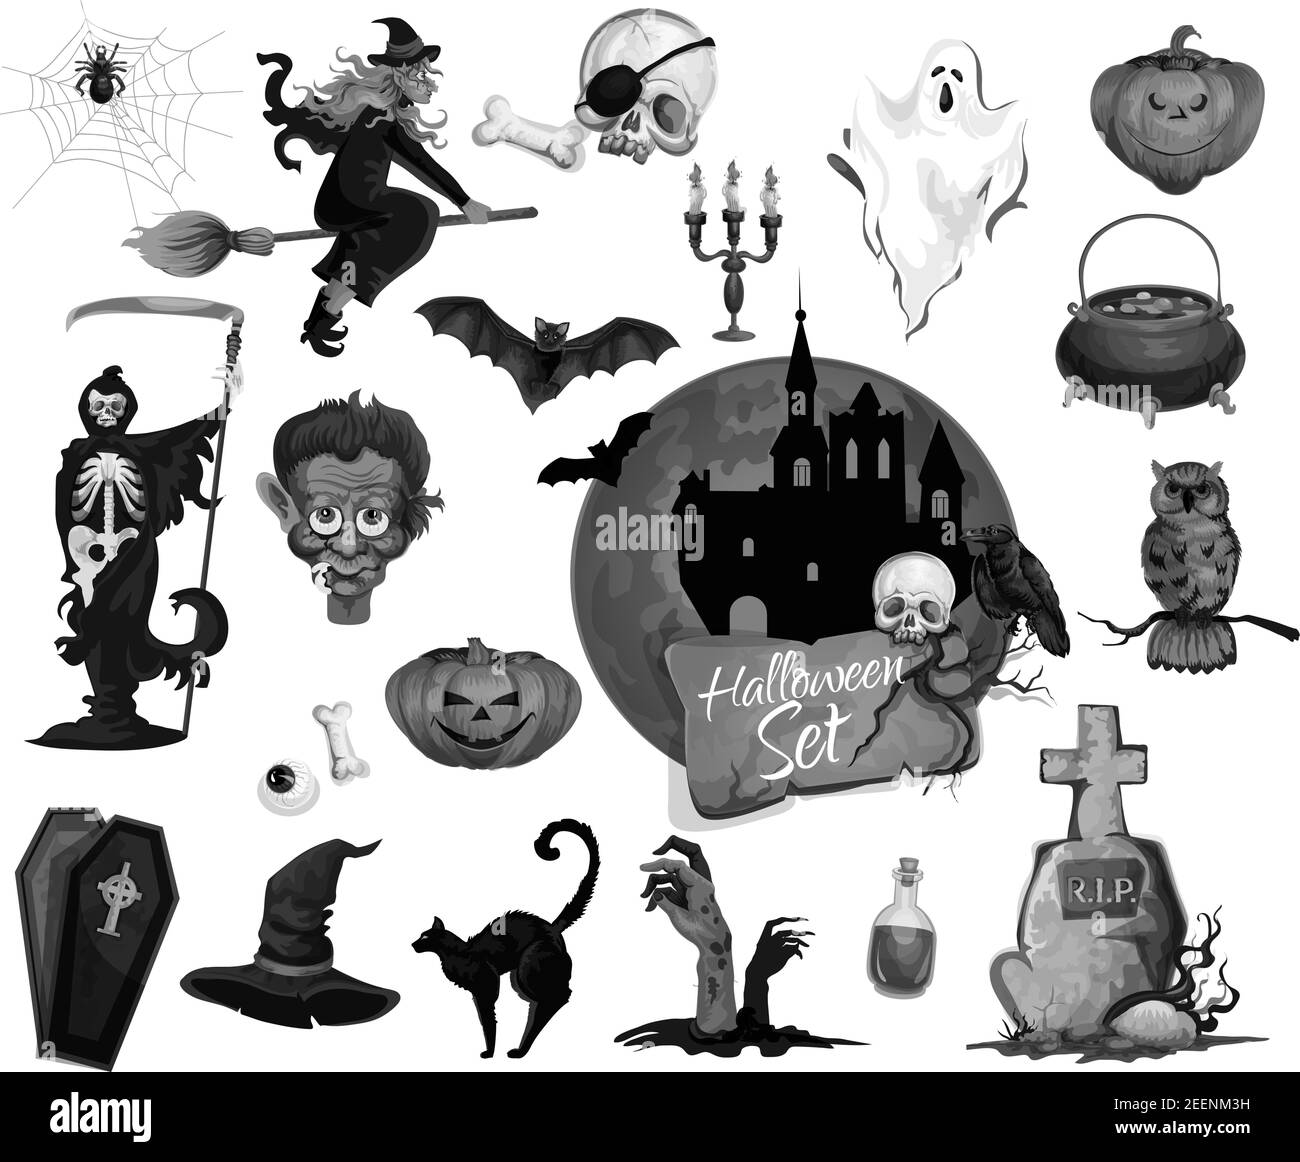 Halloween-Icons Set für beängstigende Party Urlaub. Vektor isoliert Set von Vampir, Hexe auf Besen oder dunklen Haus und Kruzifix Kreuz auf Grab Grab, Halloween Stock Vektor